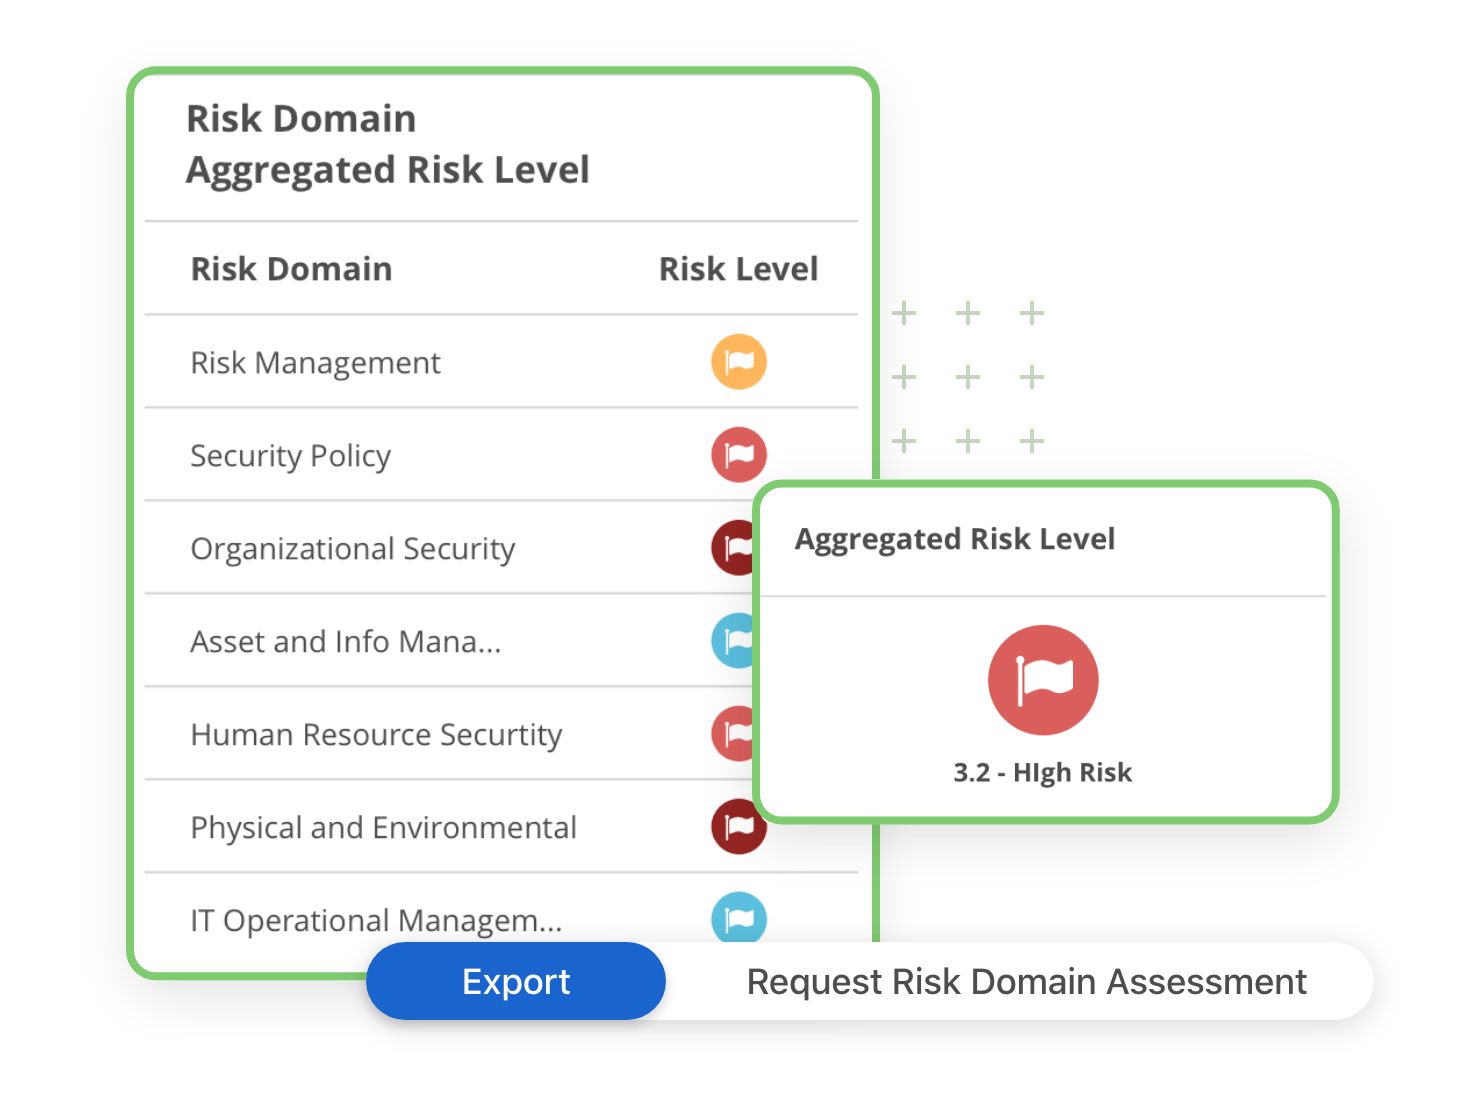 Vendor Risk Domain Assessment Example